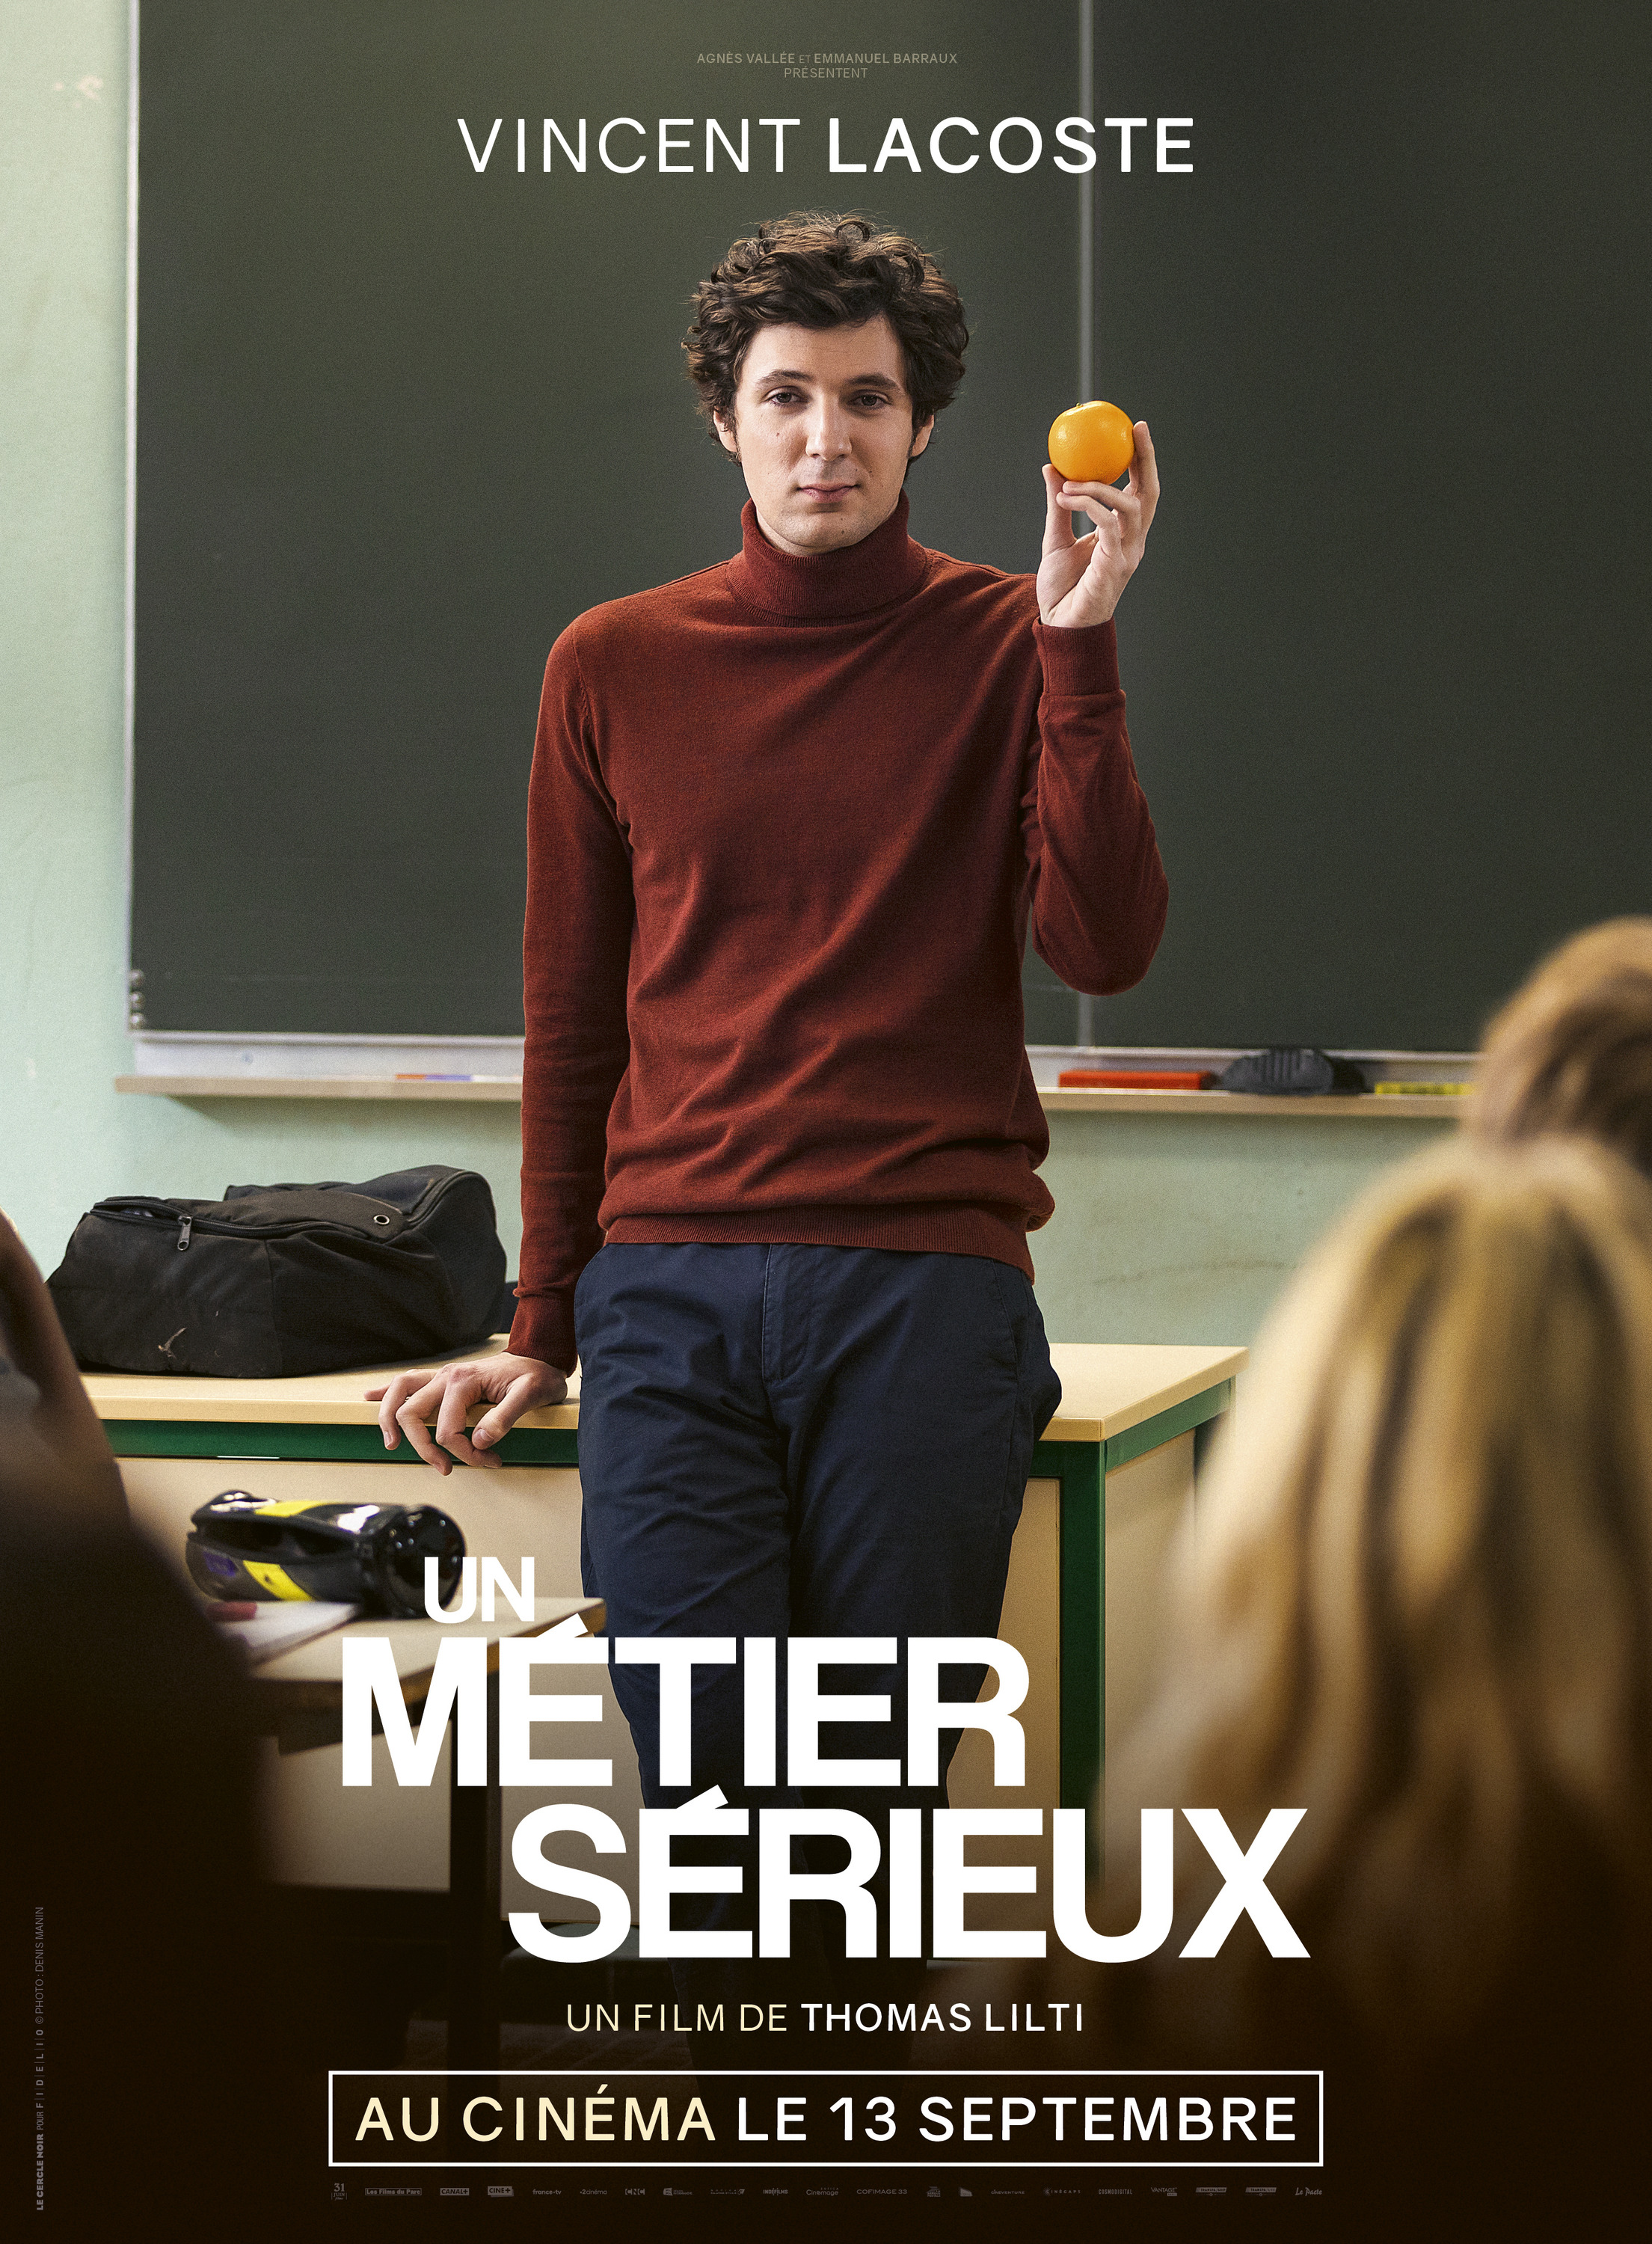 Mega Sized Movie Poster Image for Un métier sérieux (#5 of 7)